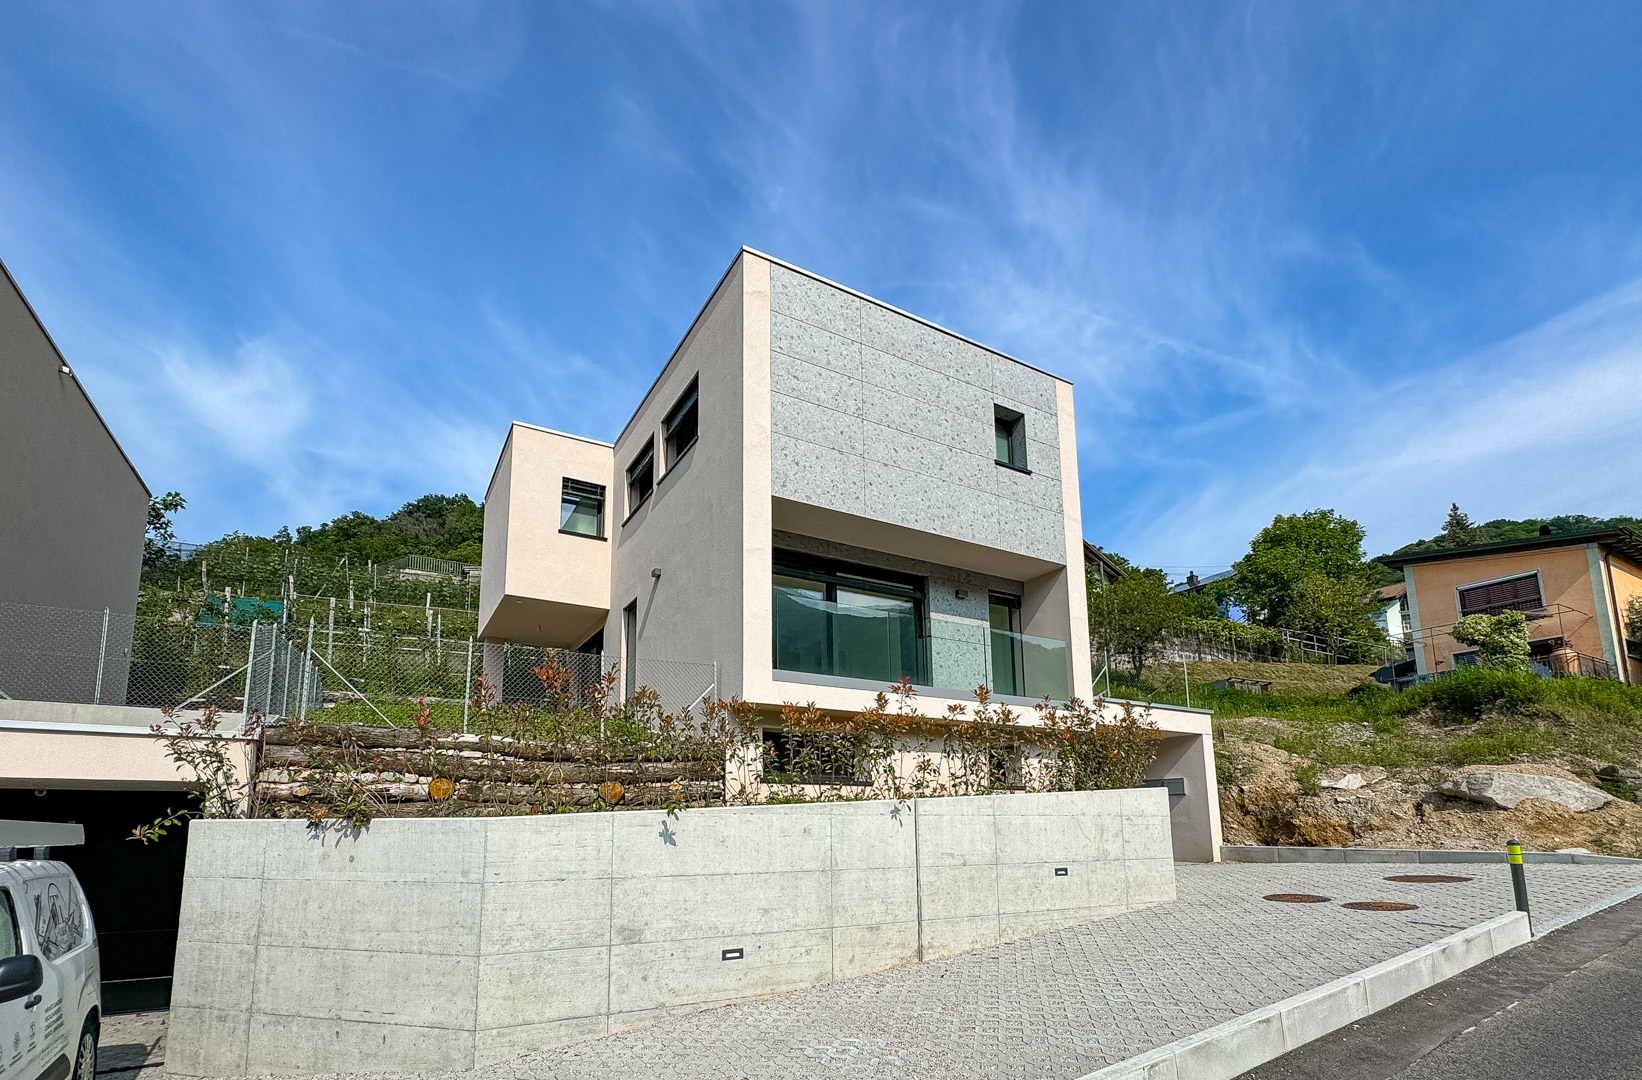 Casa unifamiliare di nuova costruzione in vendita a Mendrisio, nella tranquilla e verdeggiante frazione di Somazzo